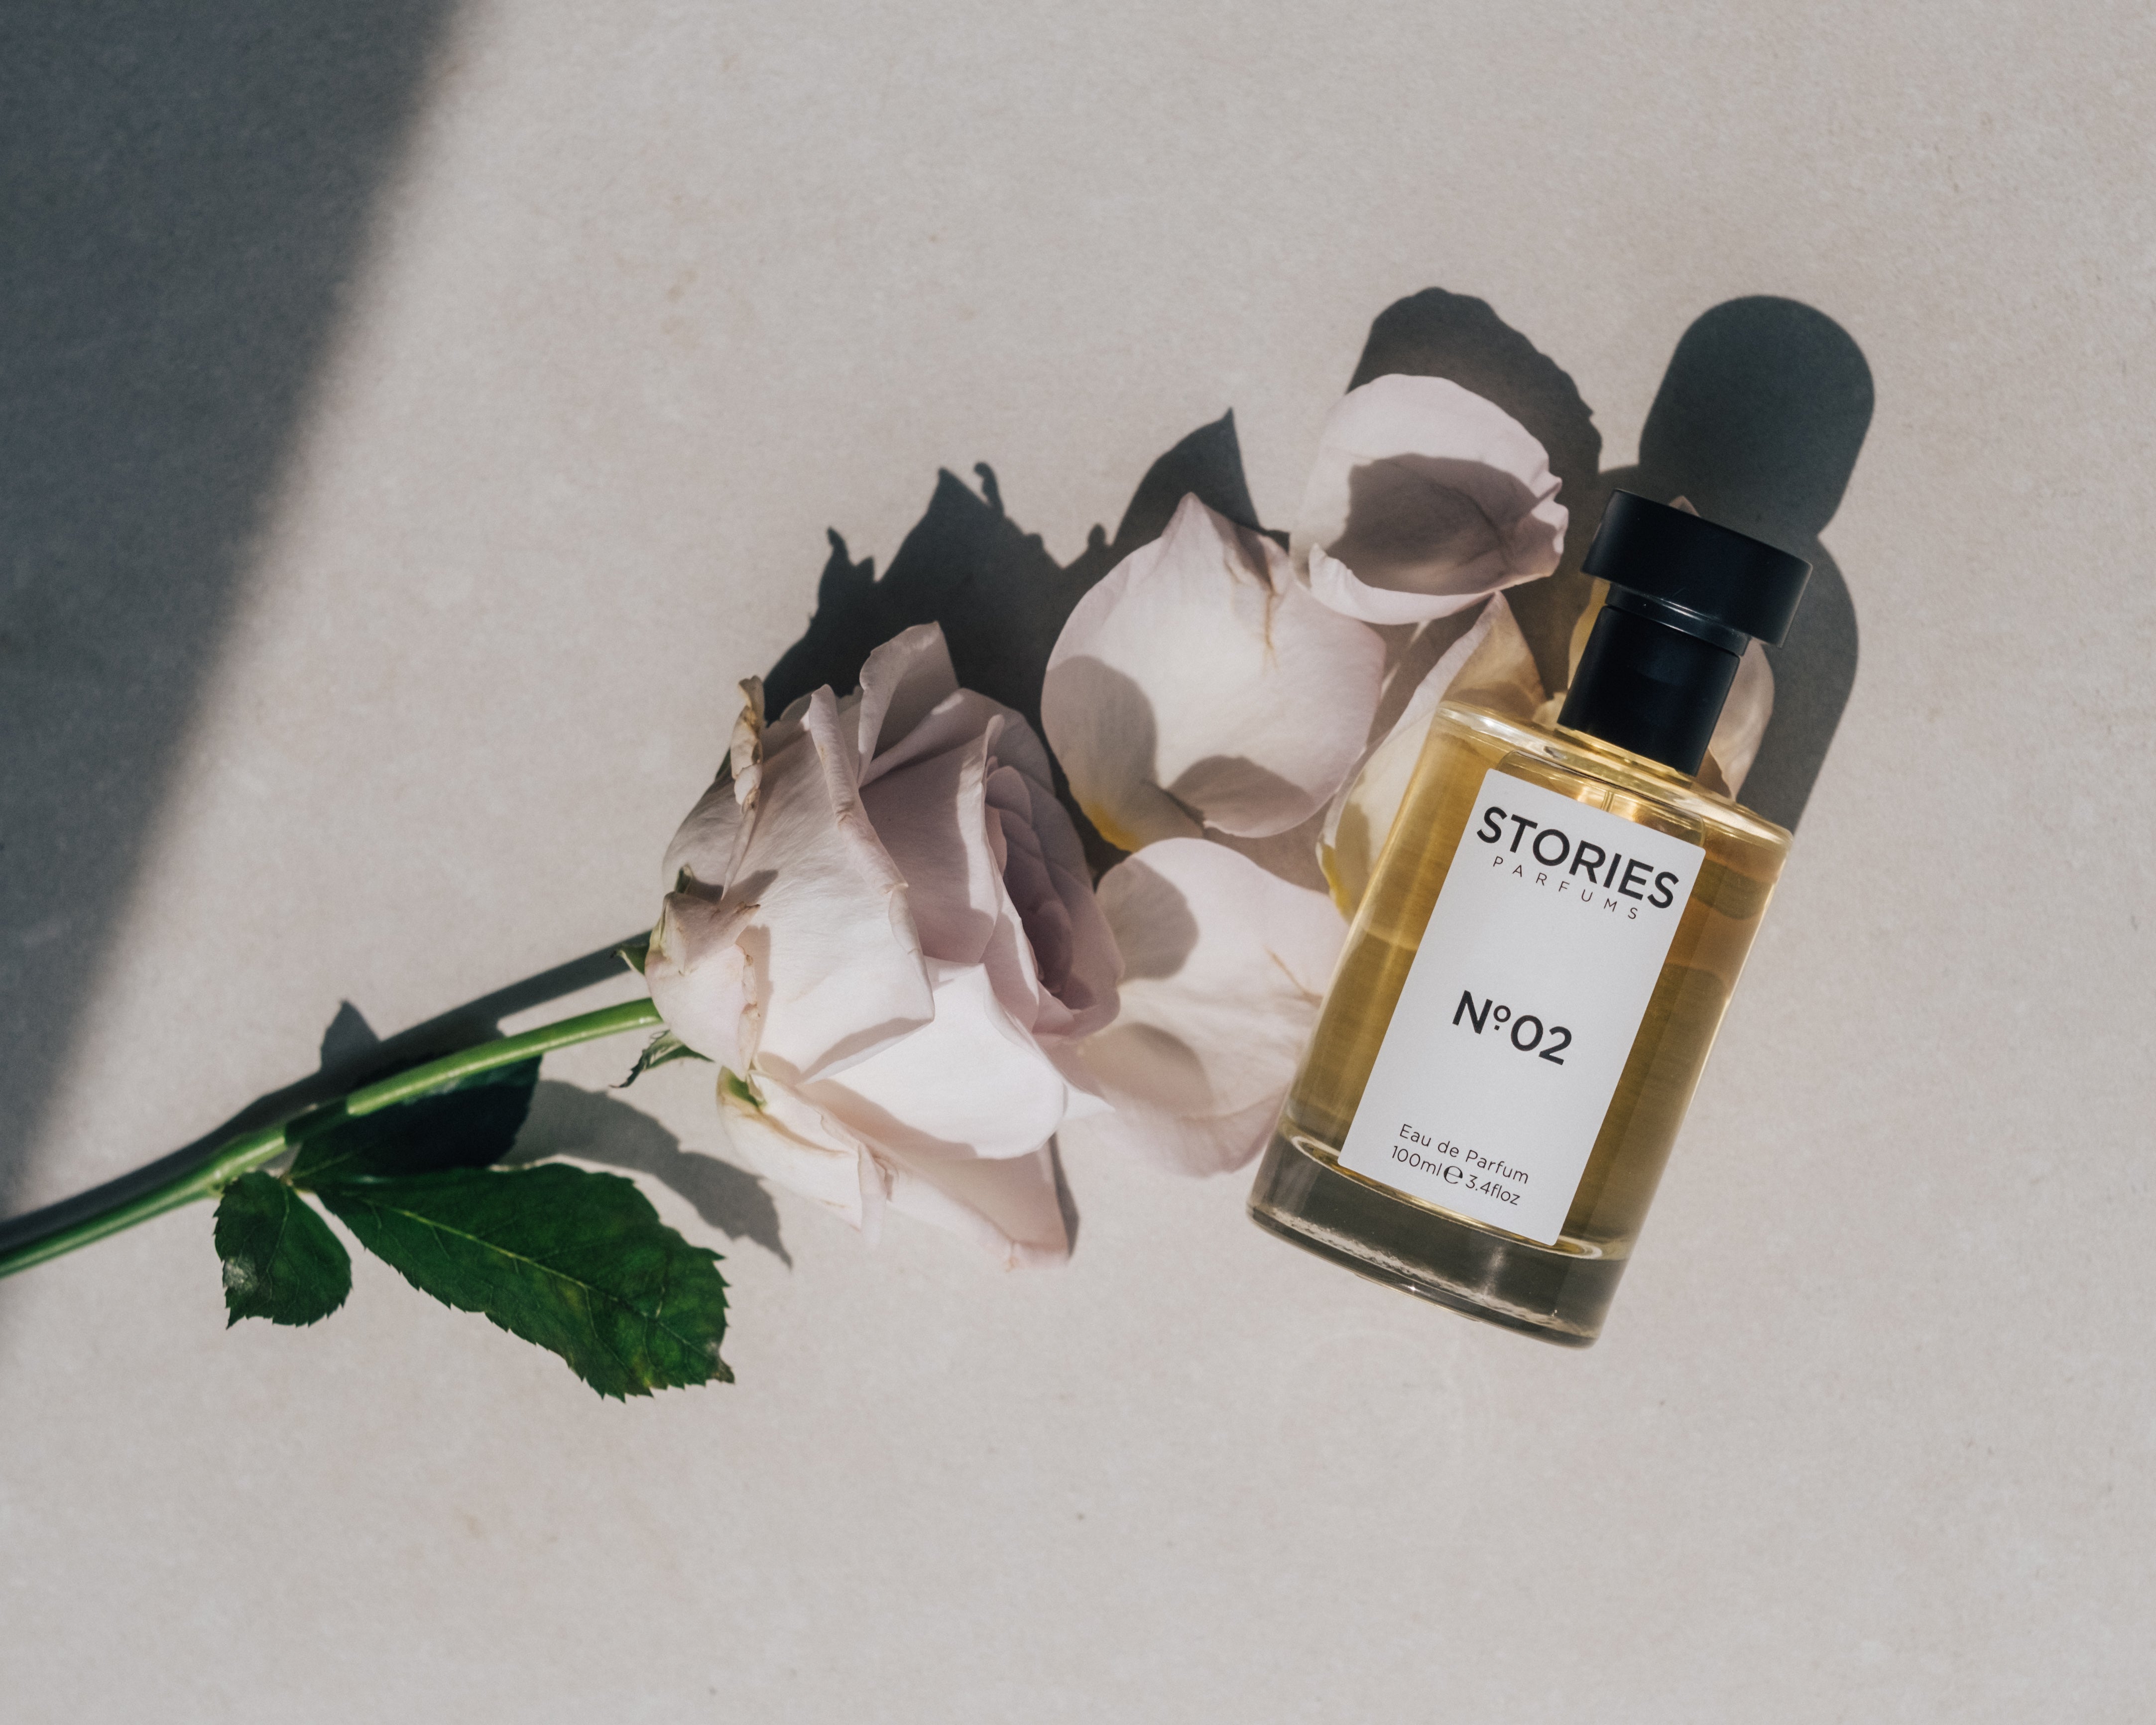 STORIES No.02 Eau de Parfum bottle lying next to a pale pink rose